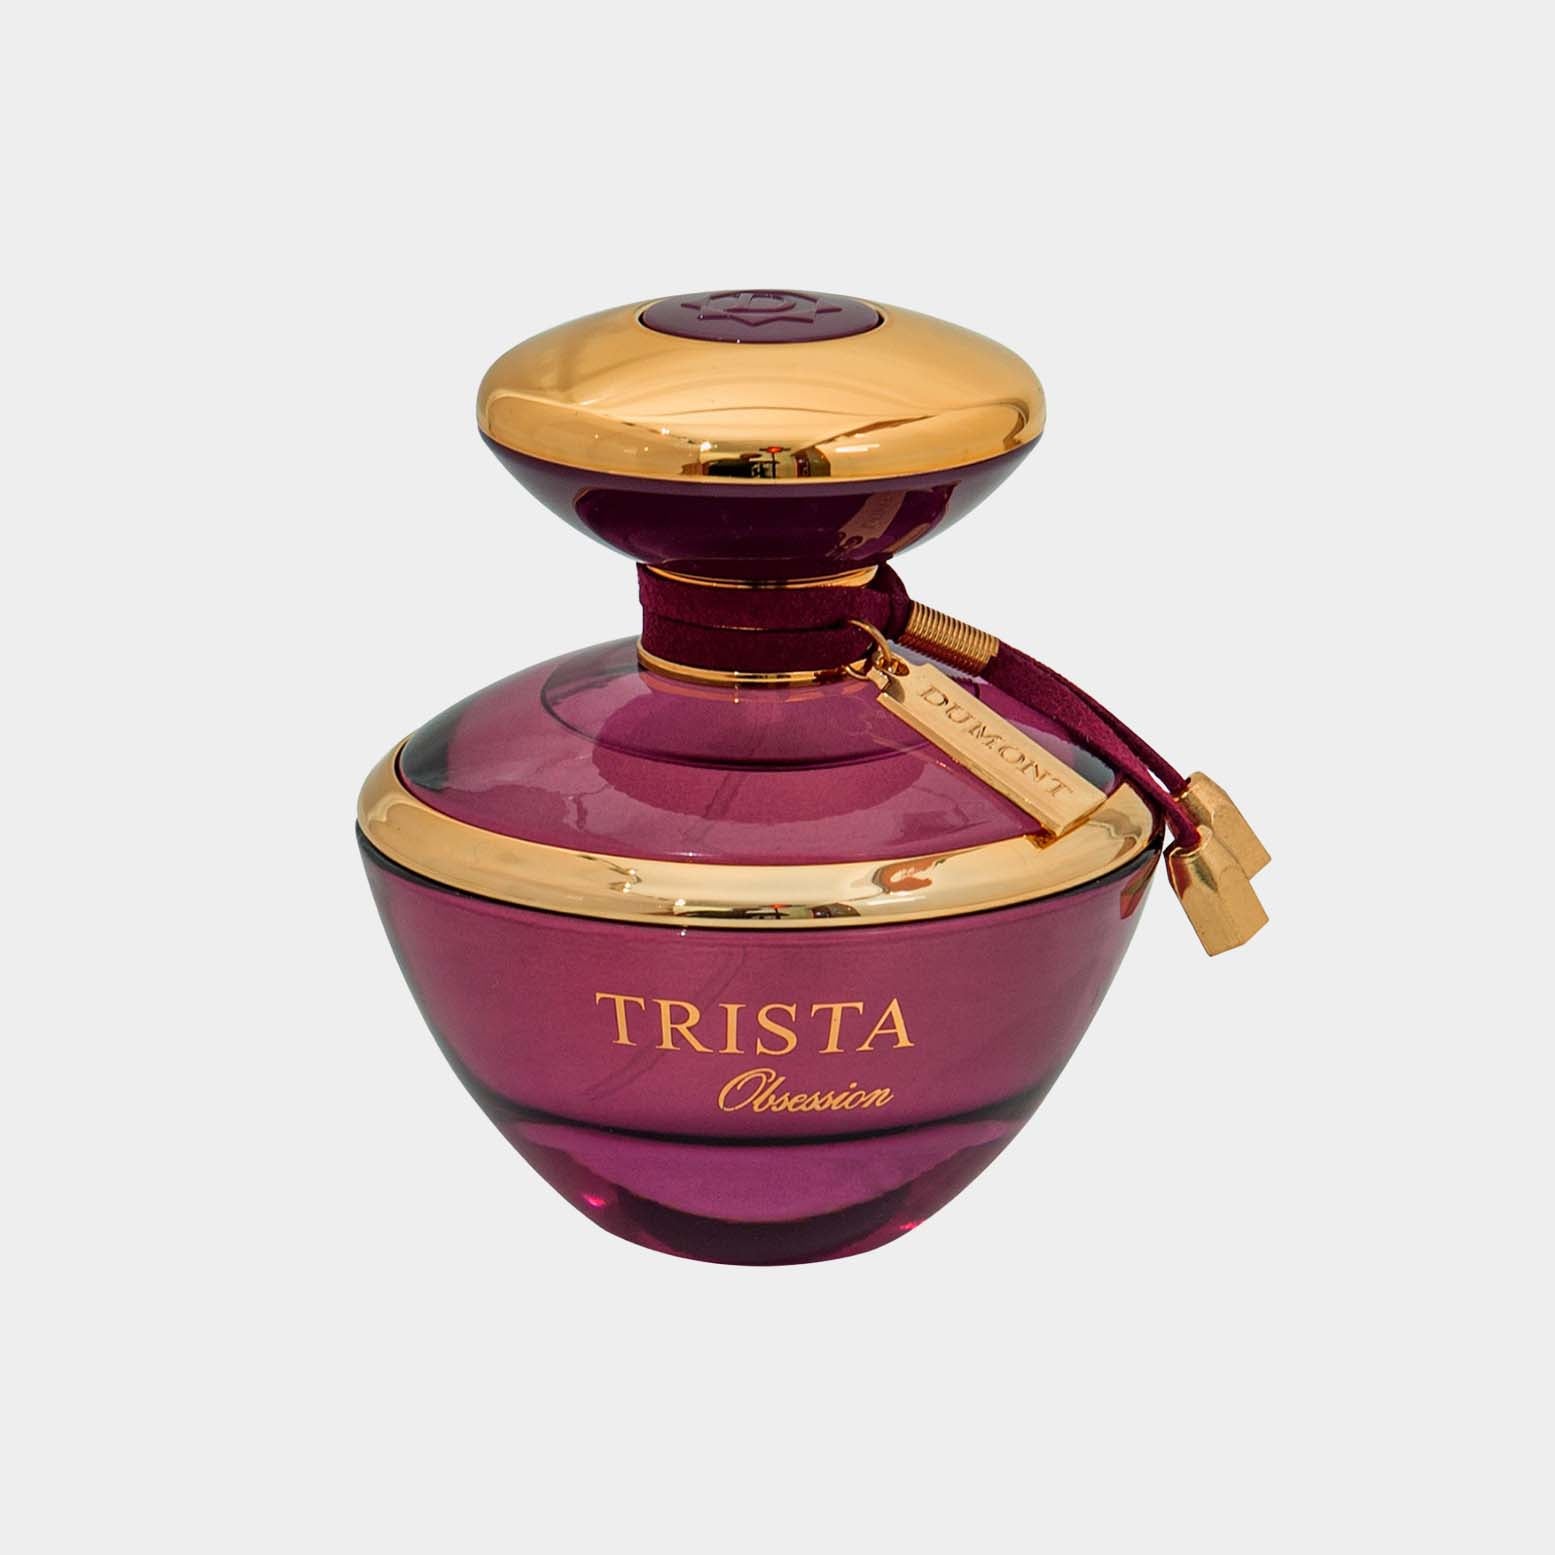 De parfum Trista Obsession.